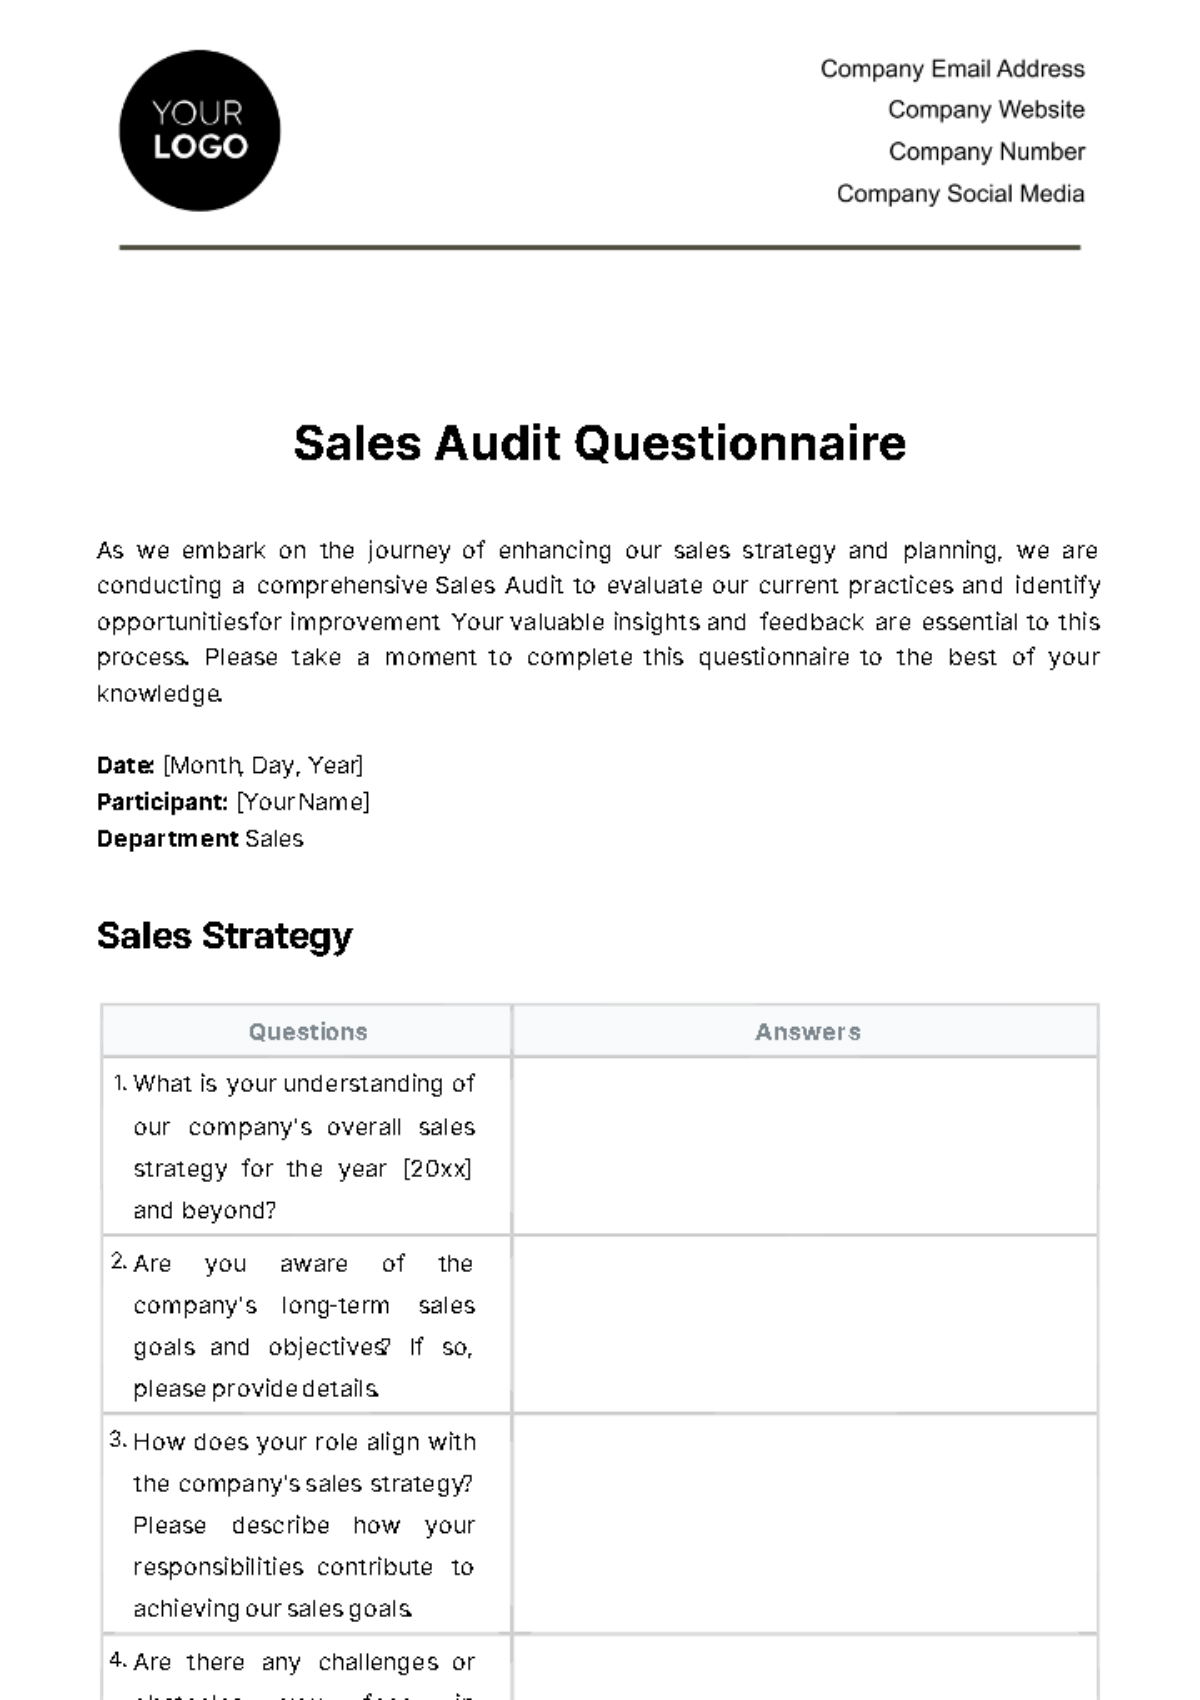 Free Sales Audit Questionnaire Template